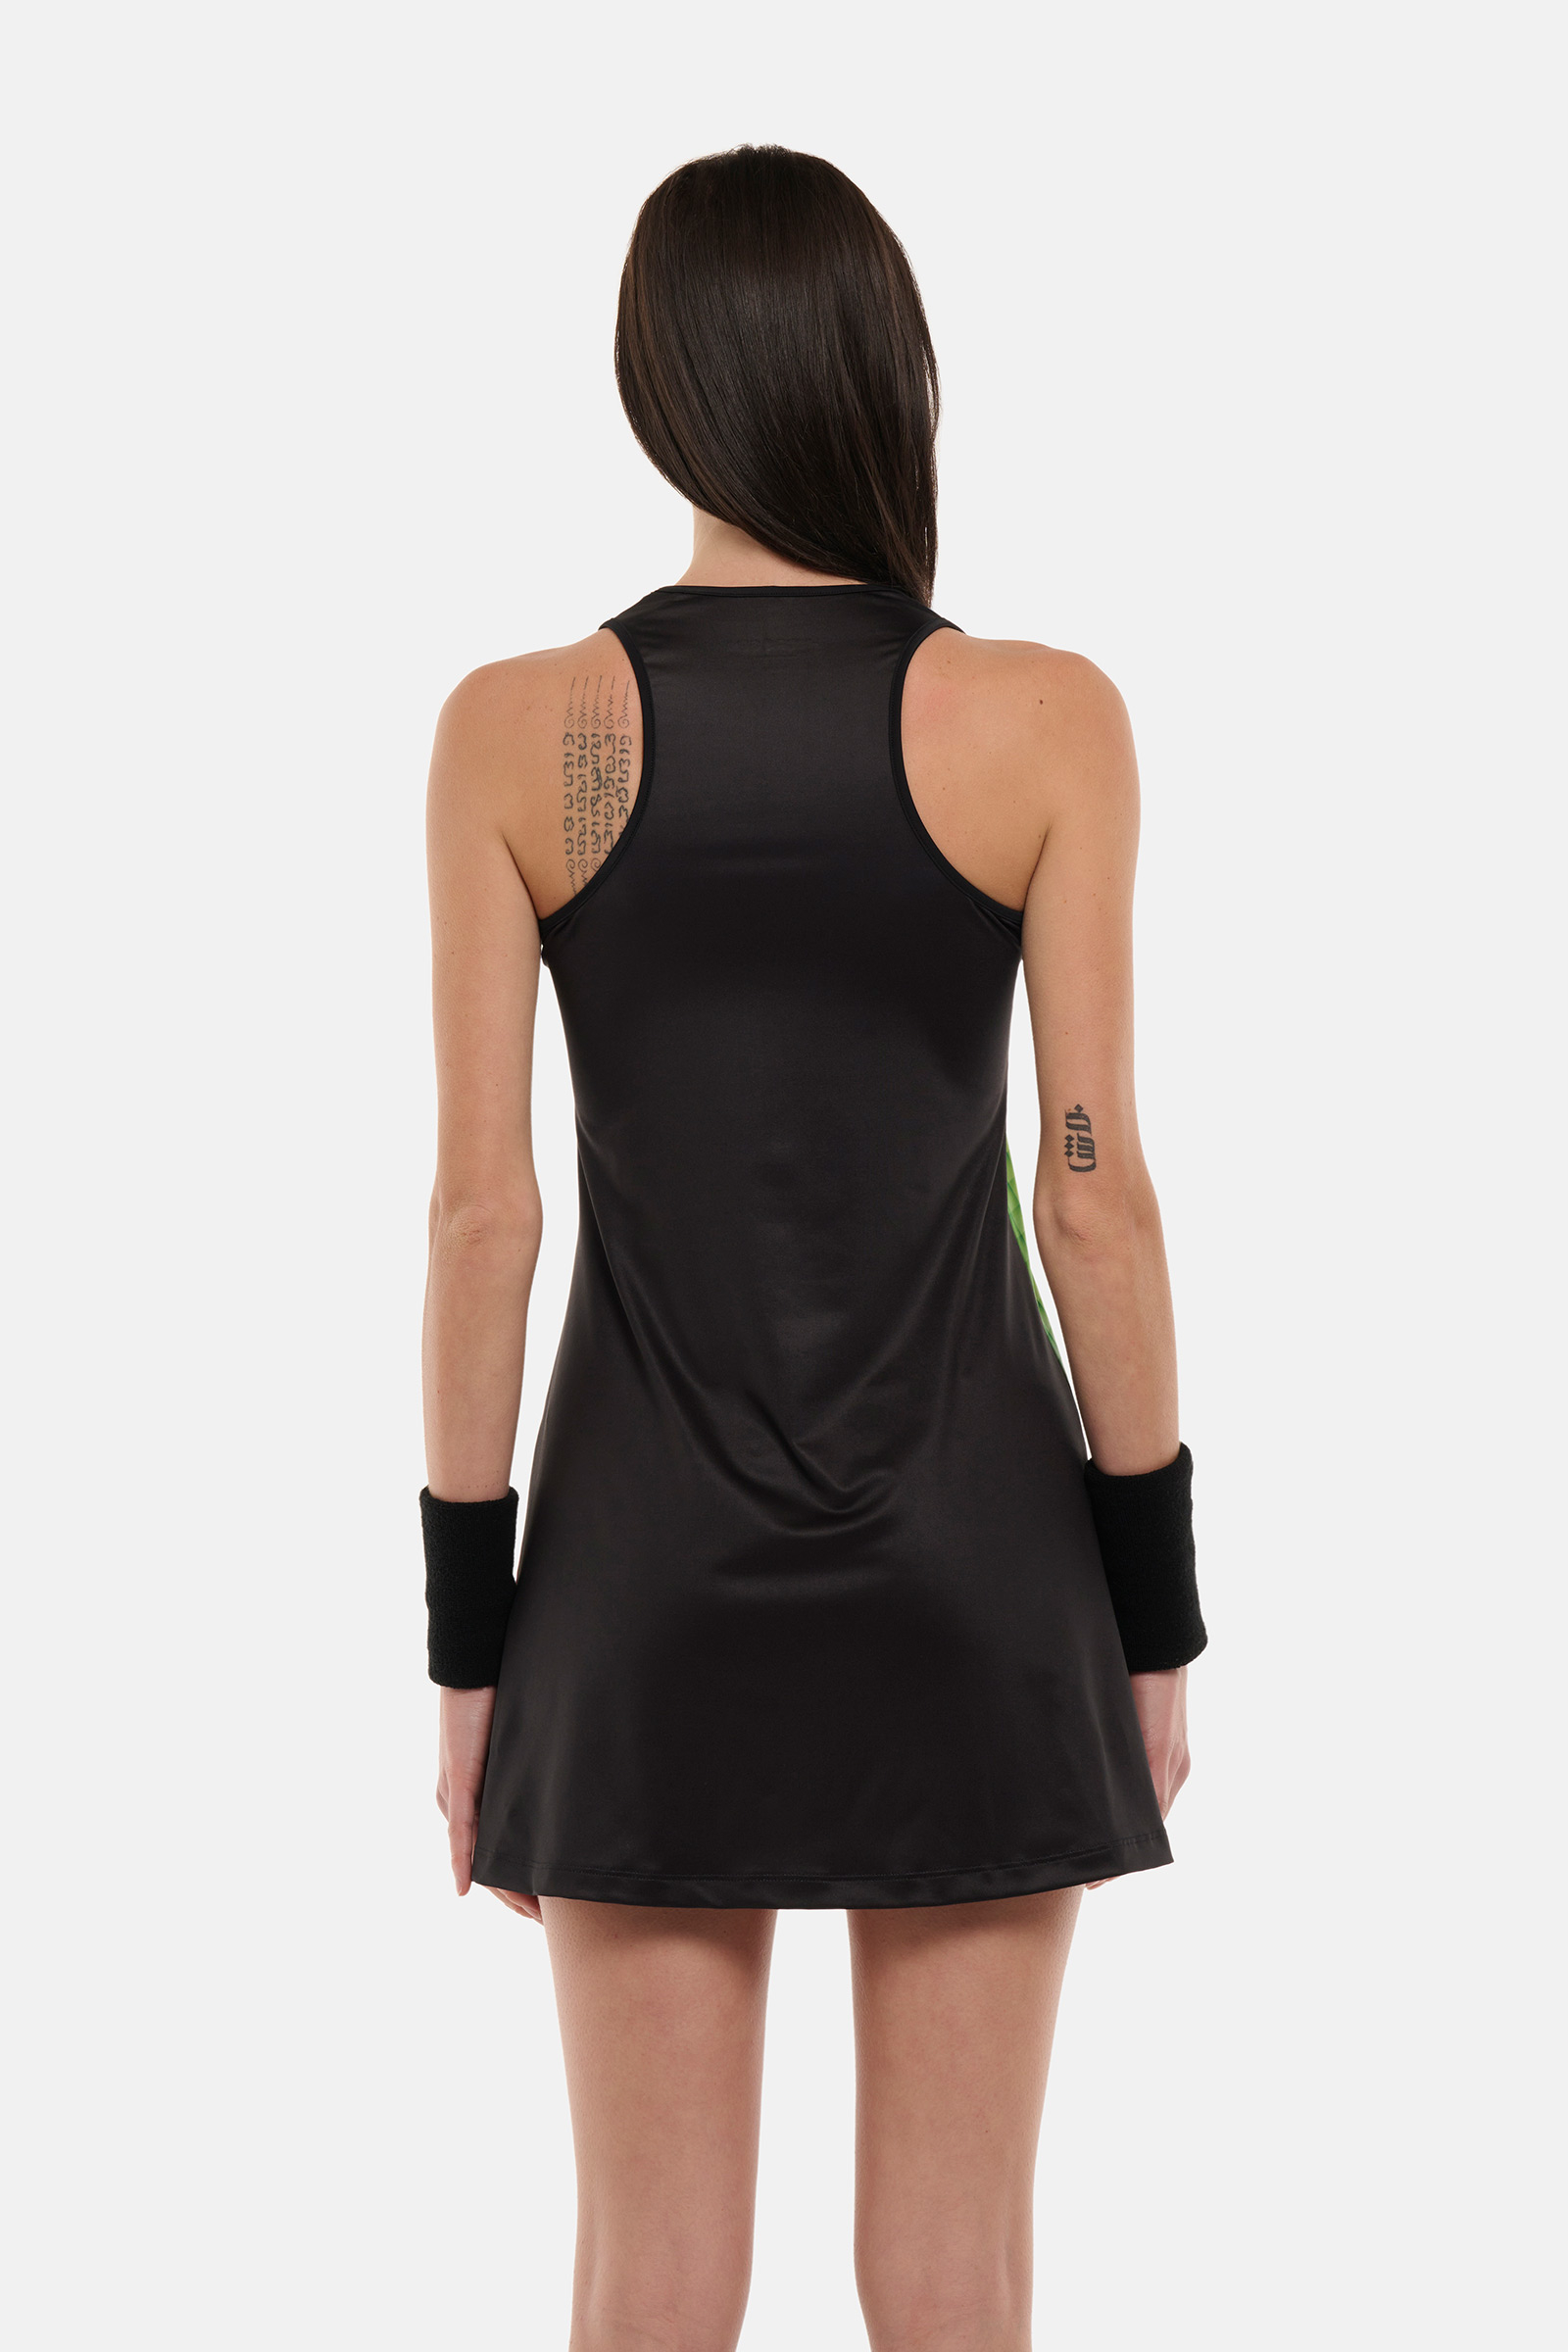 SPECTRUM TECH DRESS - BLACK - Hydrogen - Luxury Sportwear